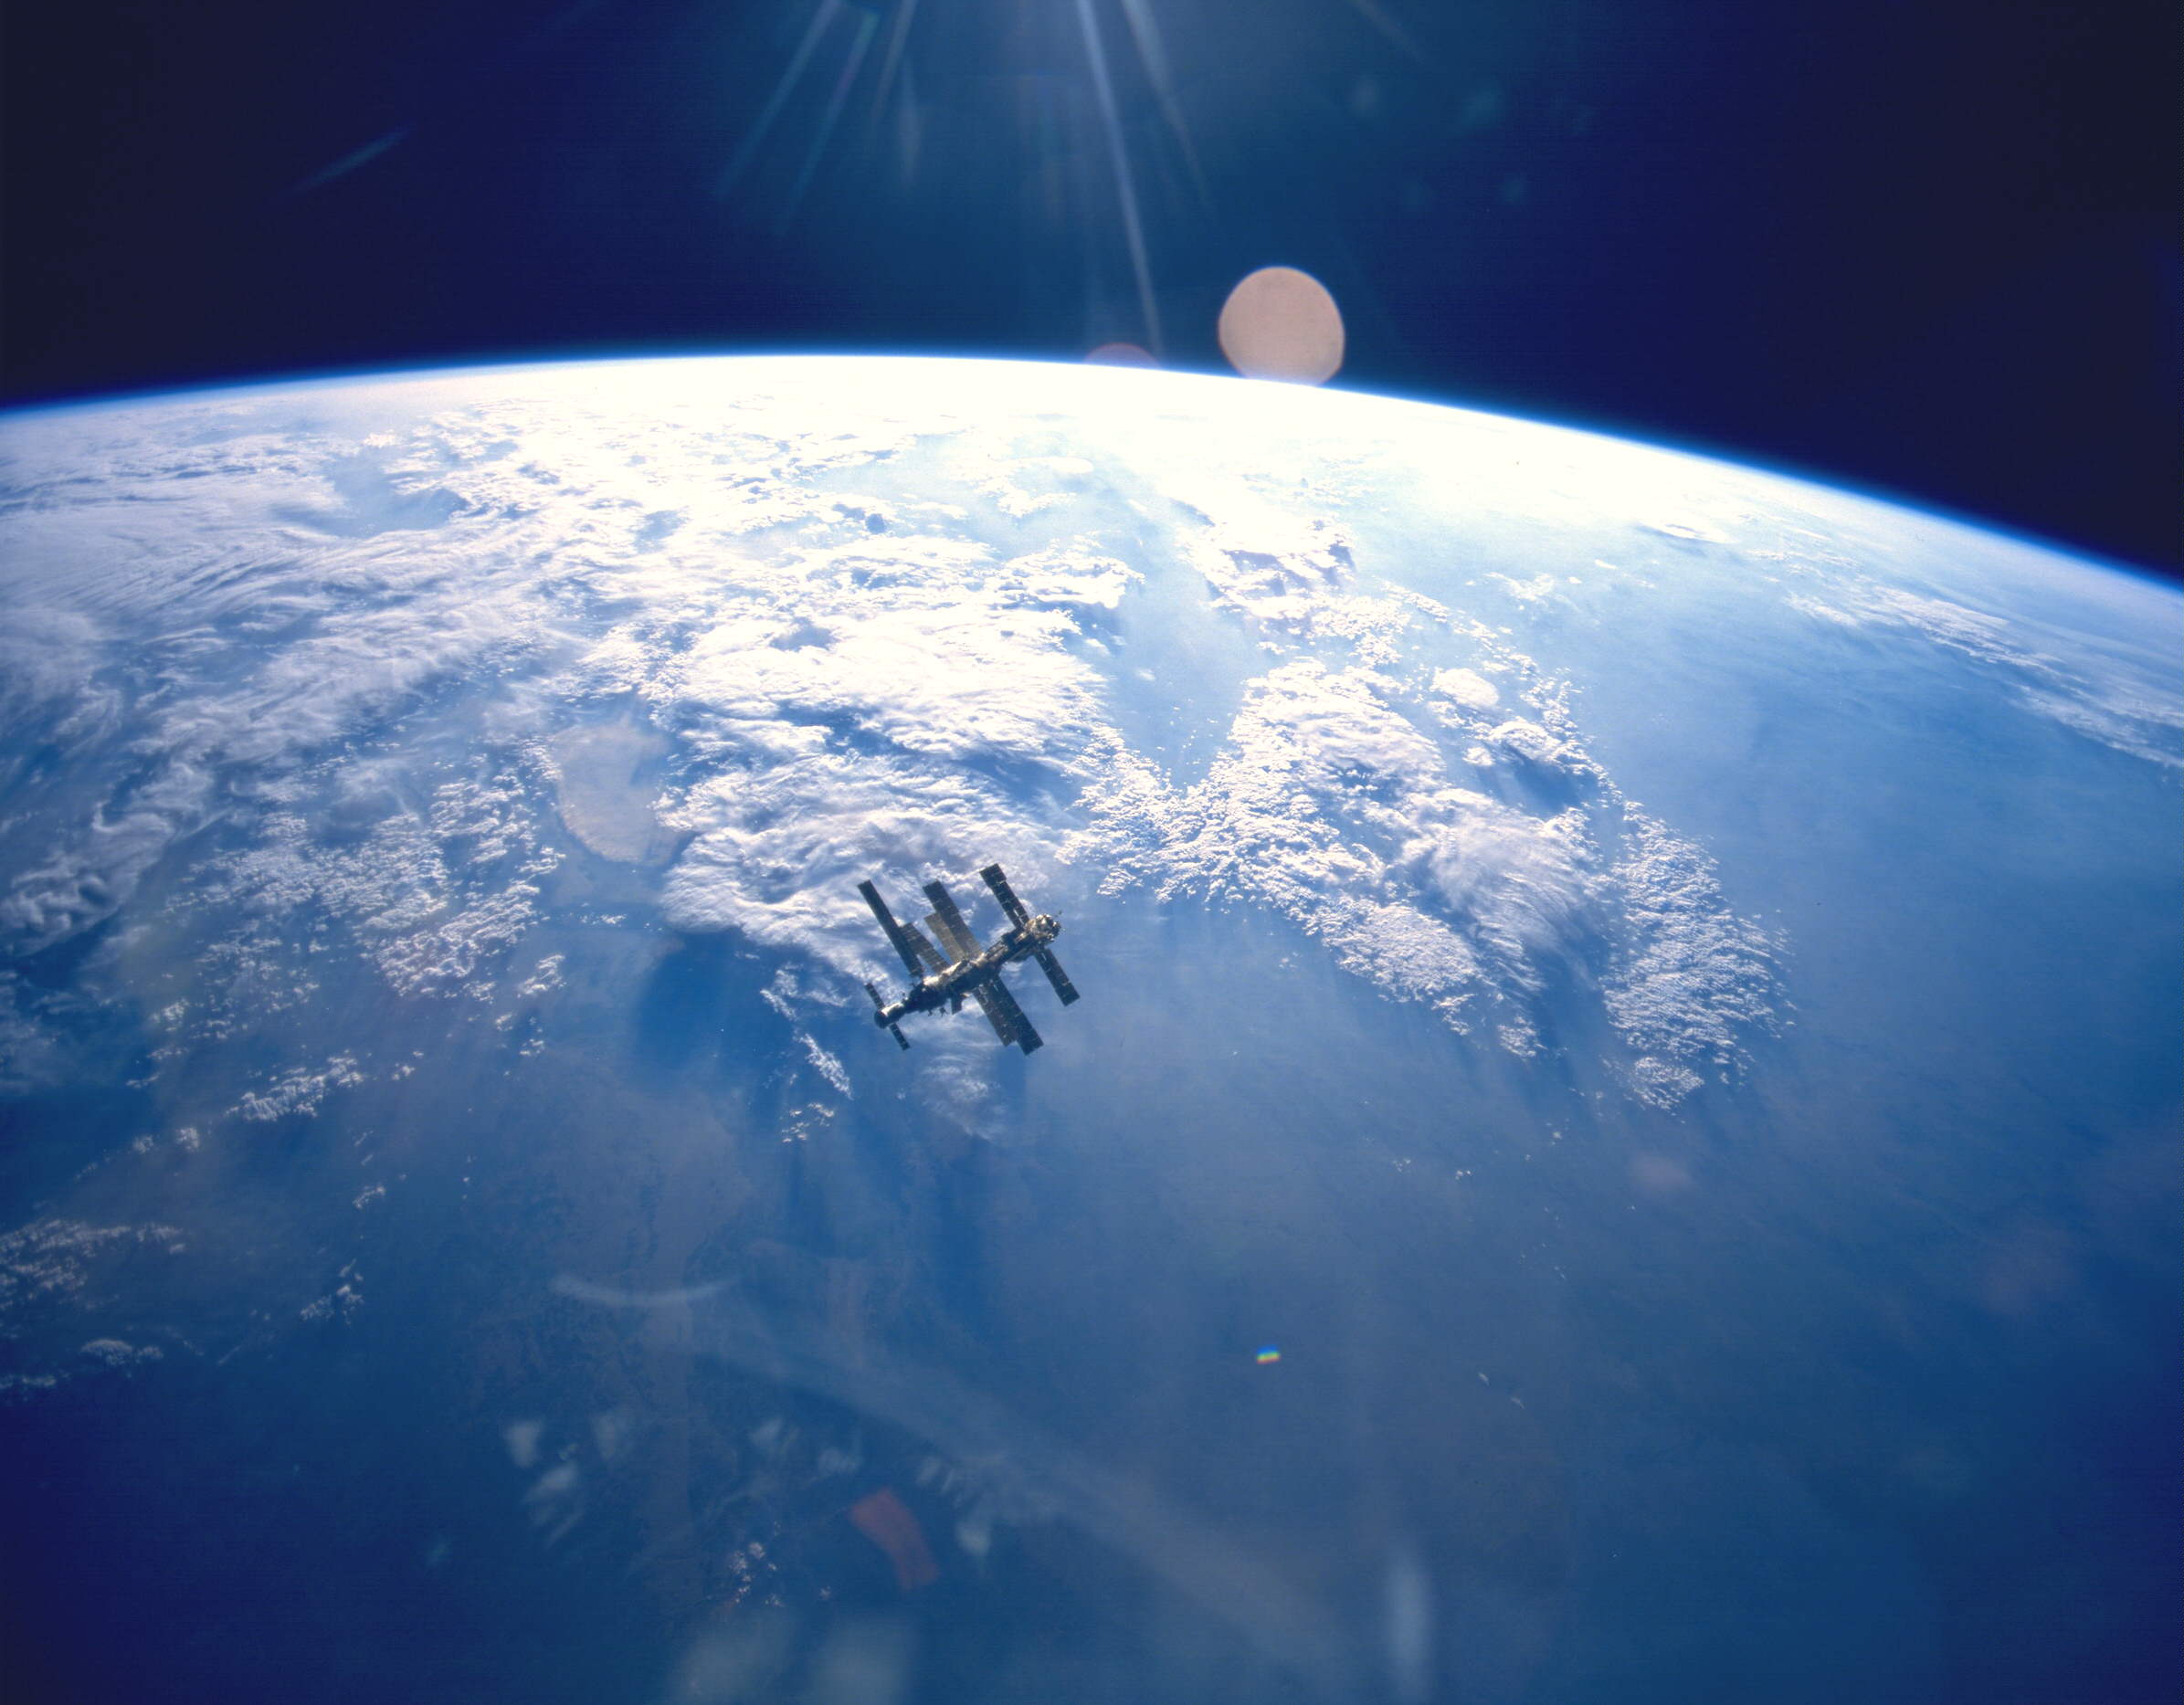 NASA HD Wallpaper and Background Image